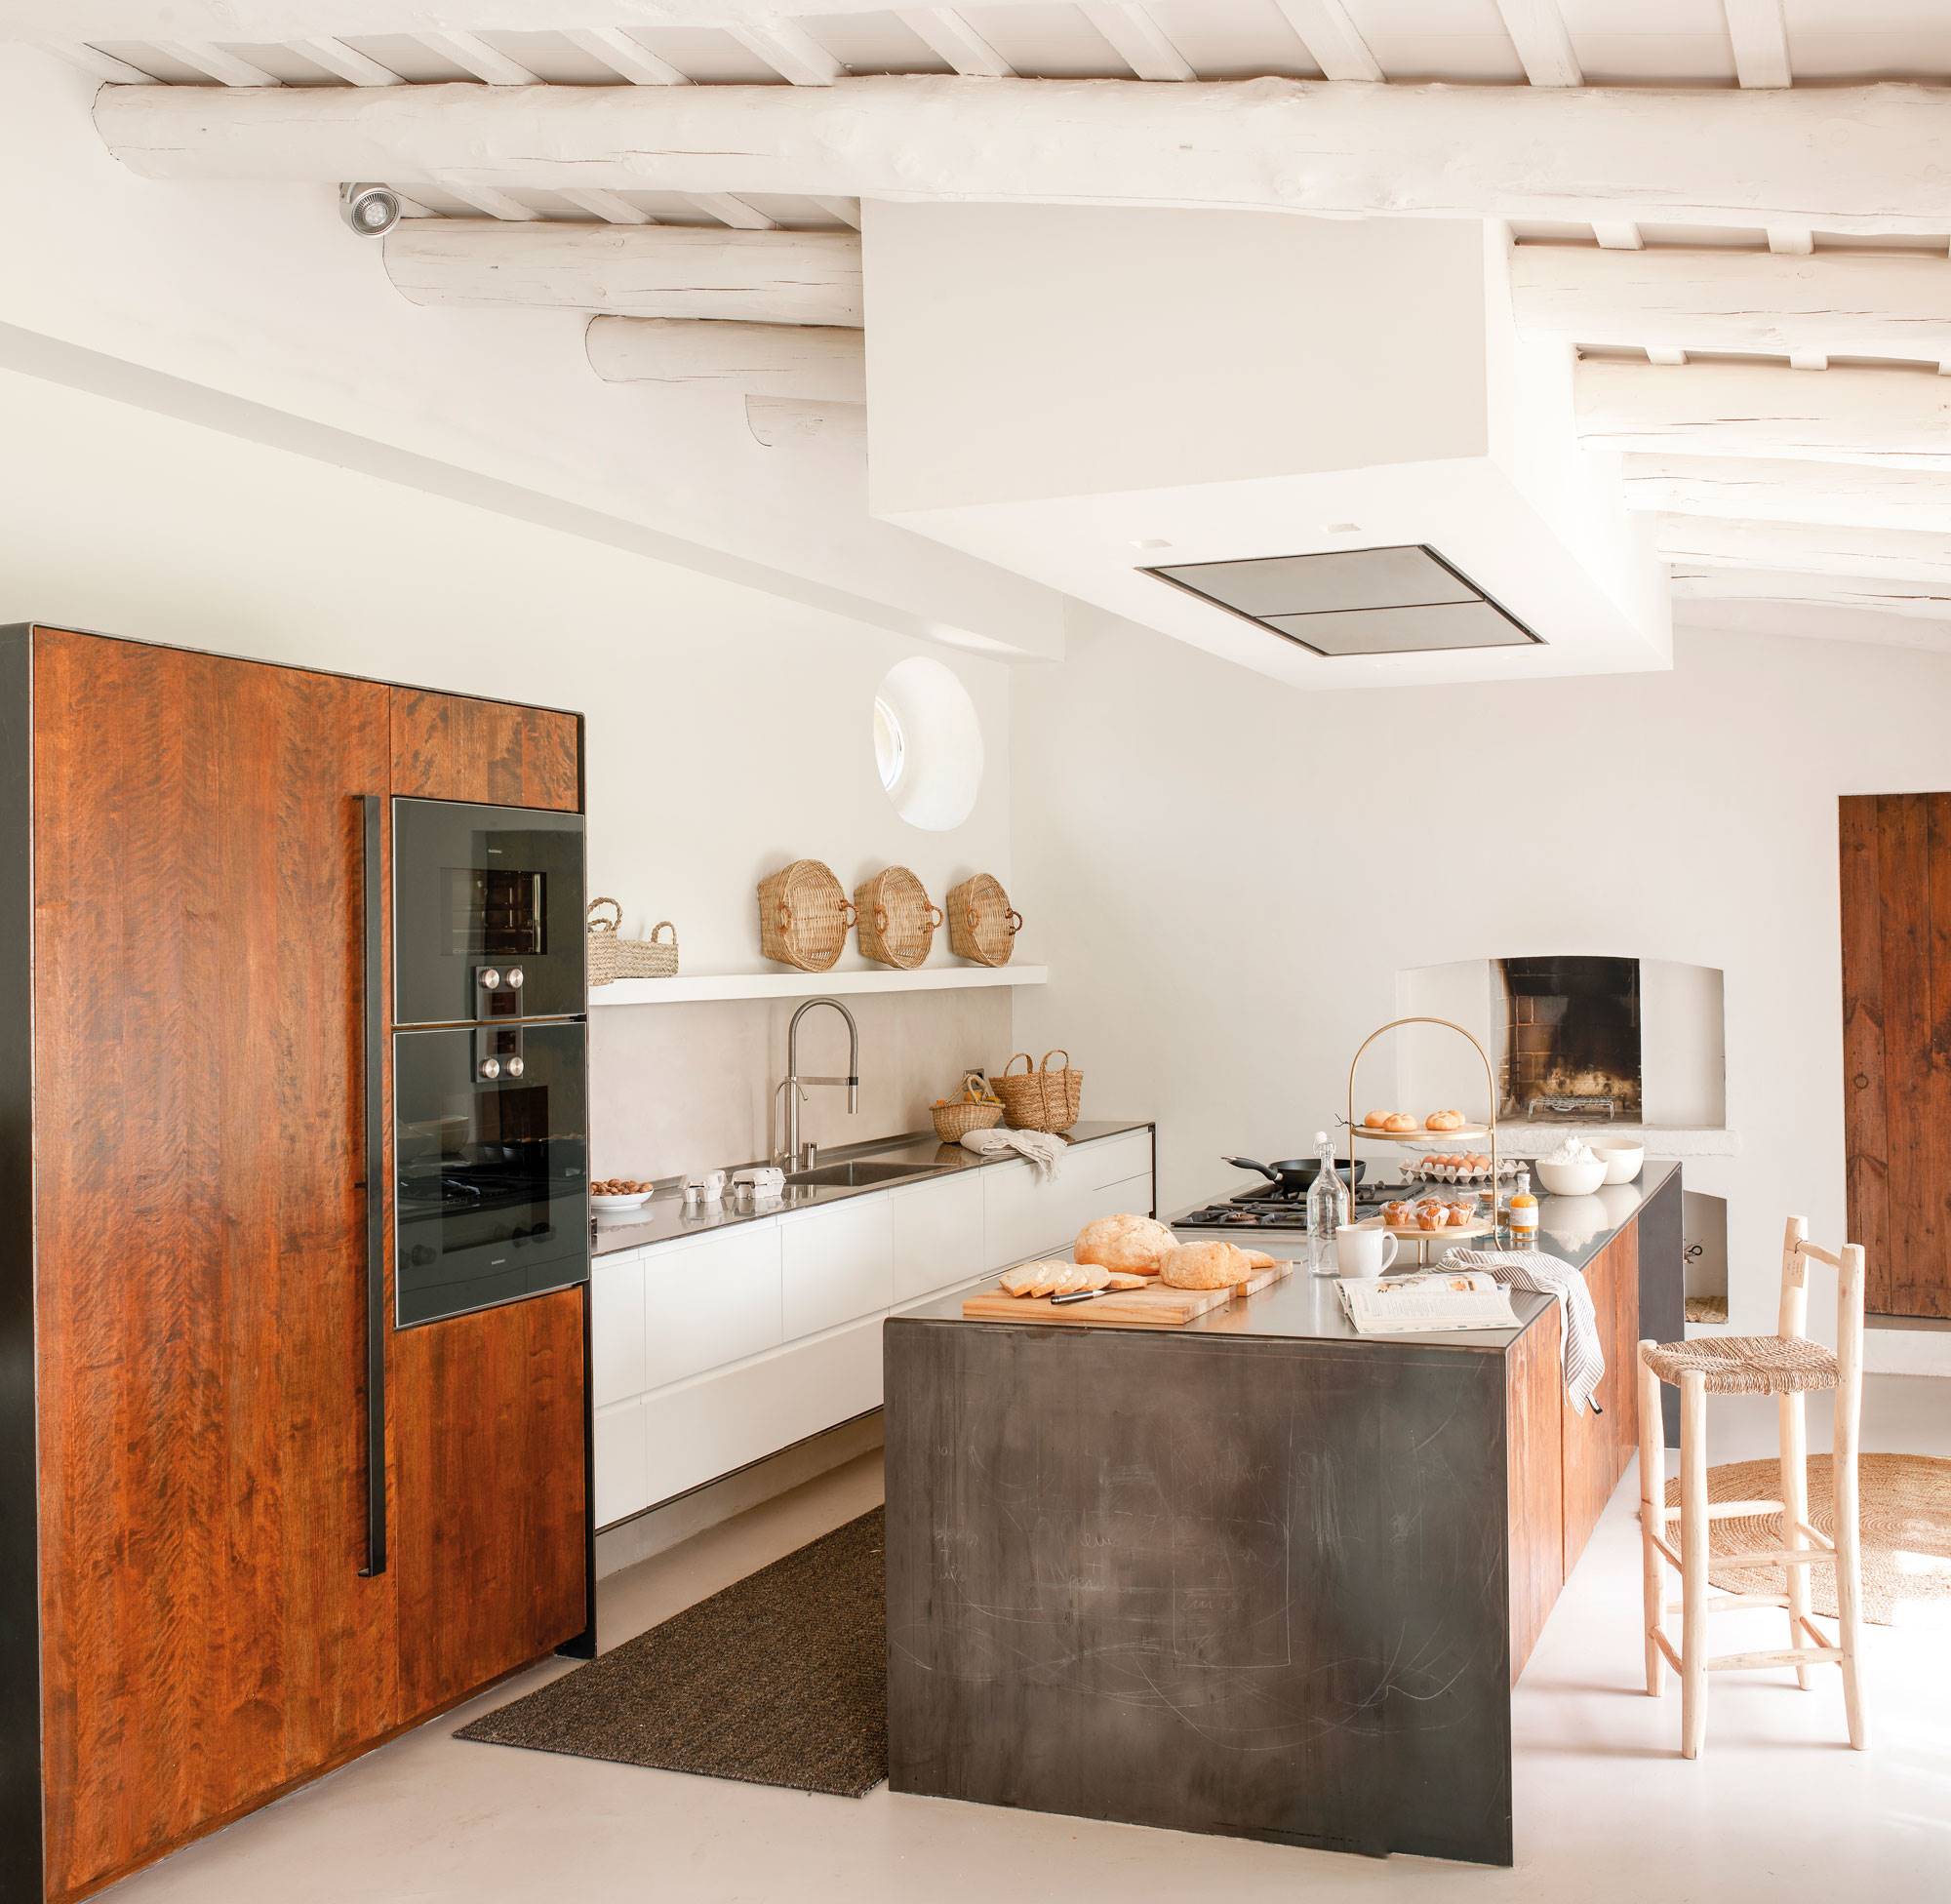 Cocina de estilo rústico moderno con muebles blancos, electrodomésticos panelados en madera y gran isla. 